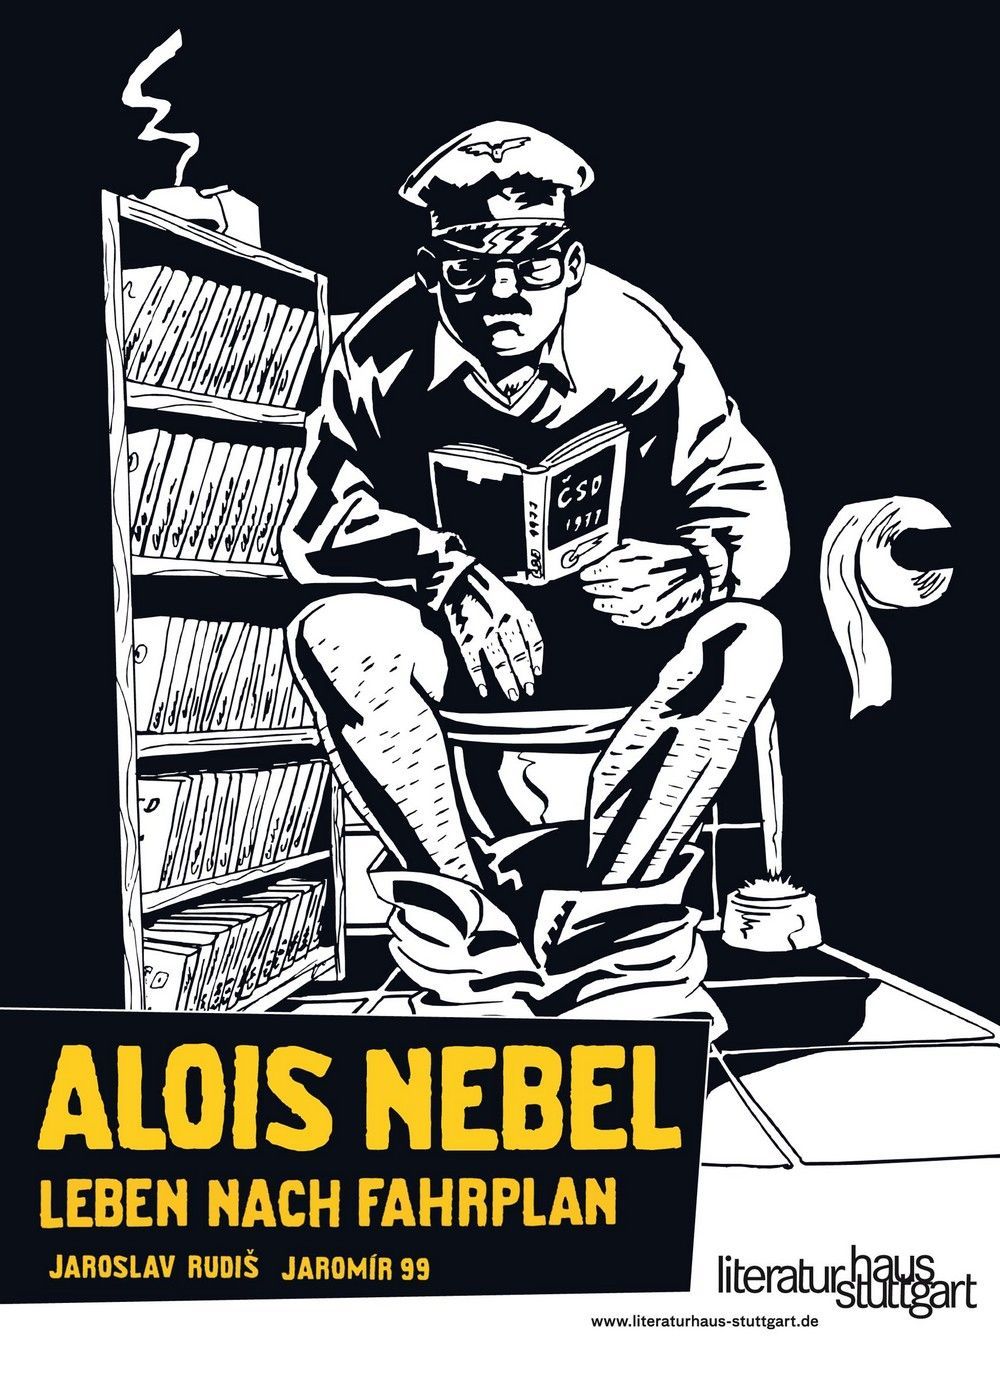 Alois Nebel - německý plakát